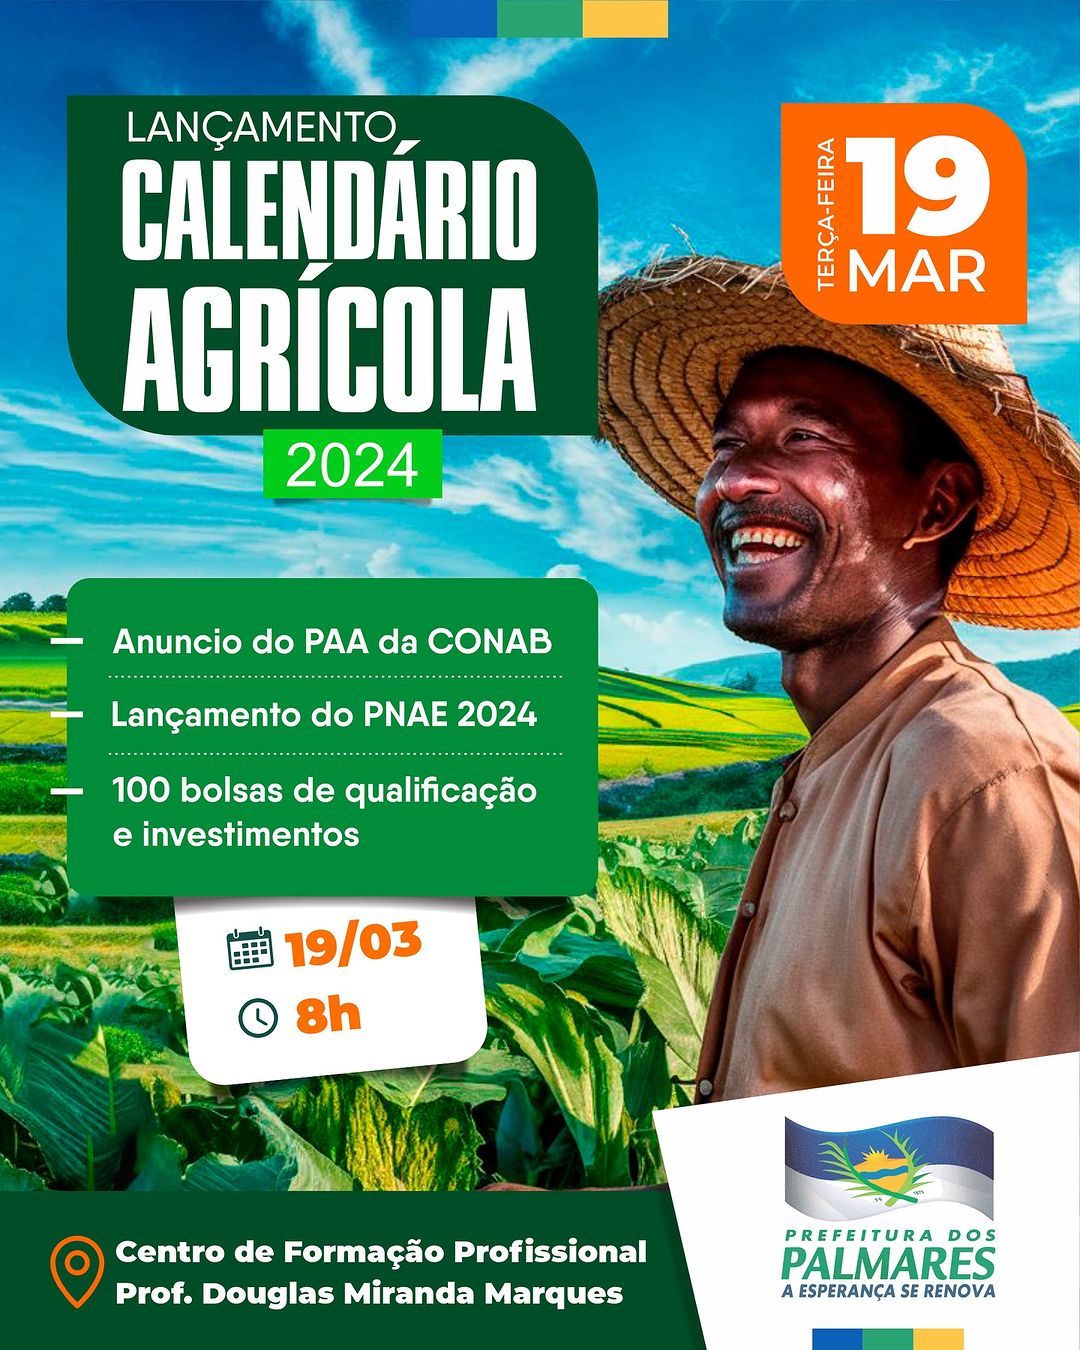 Lançamento do Calendário Agrícola 2024